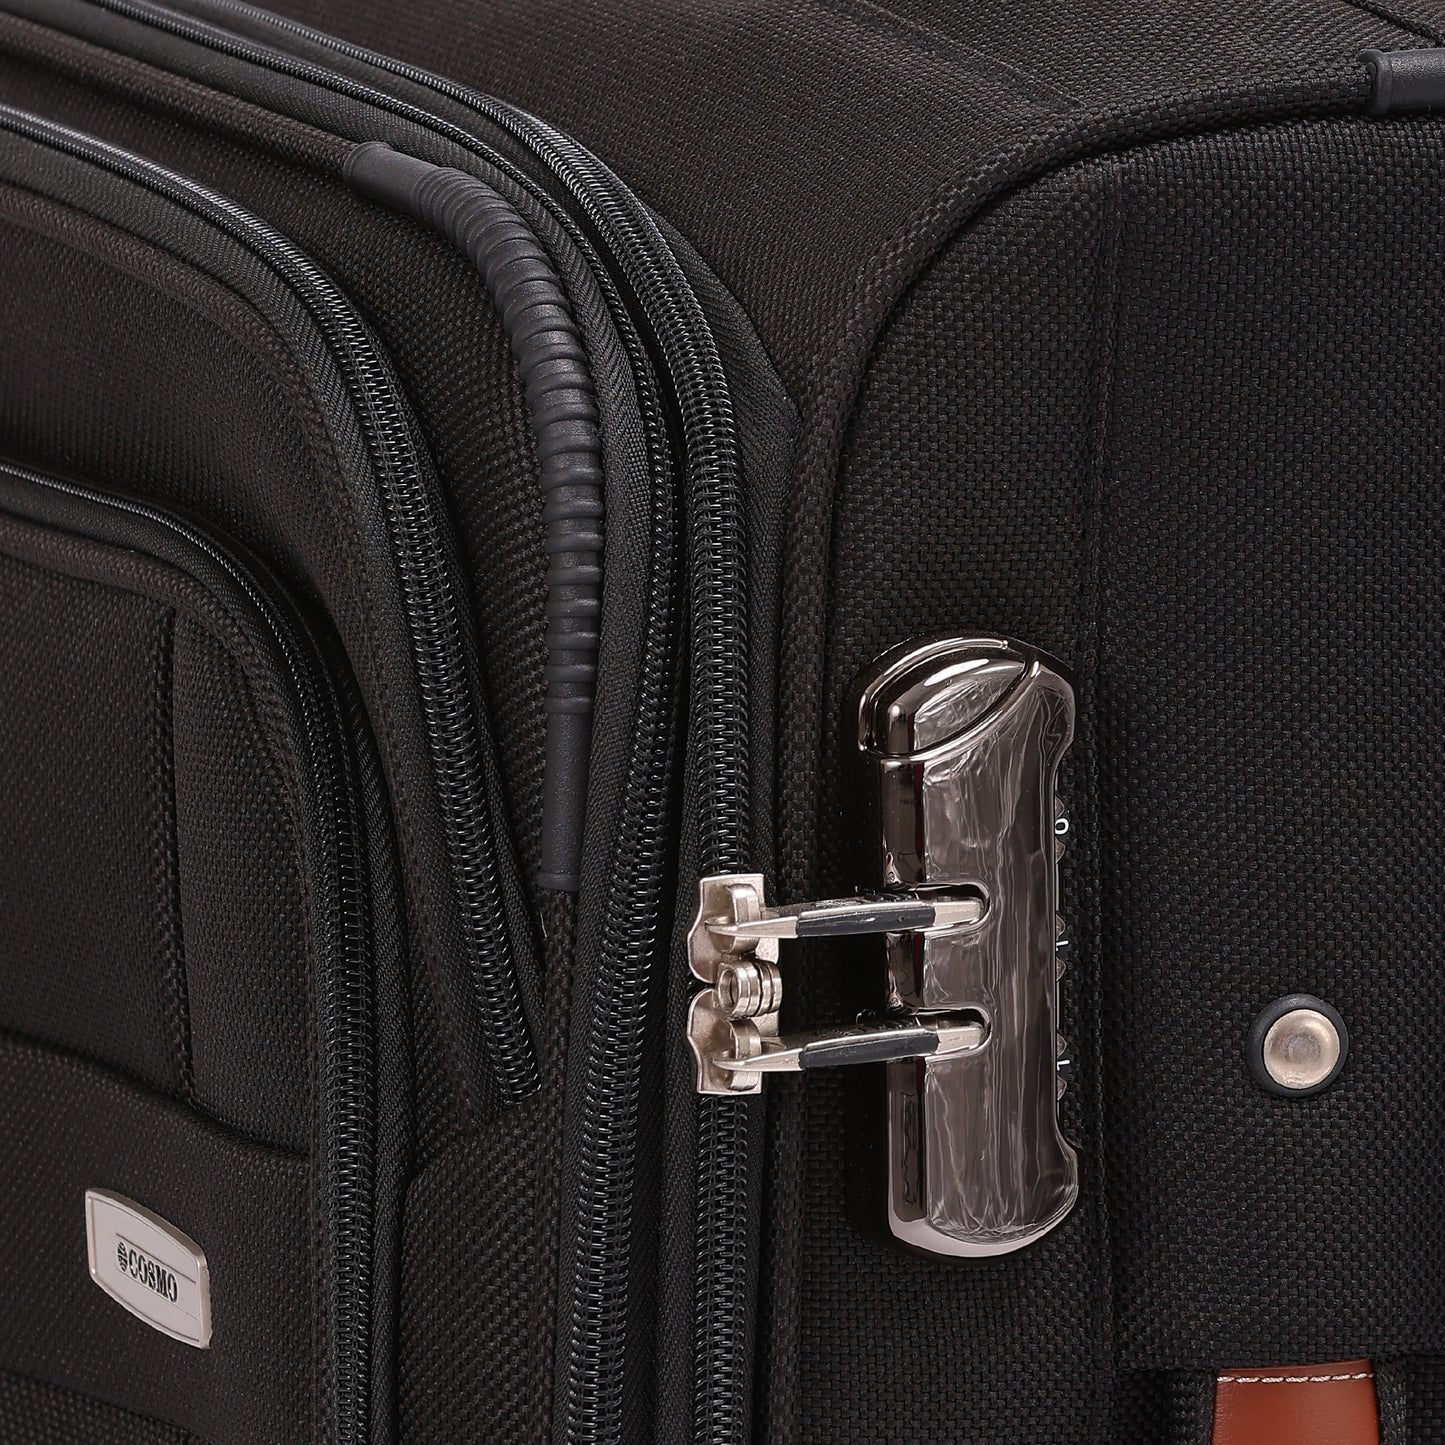 Cosmo Maxima 4W 70 cm Soft Luggage Trolley Case